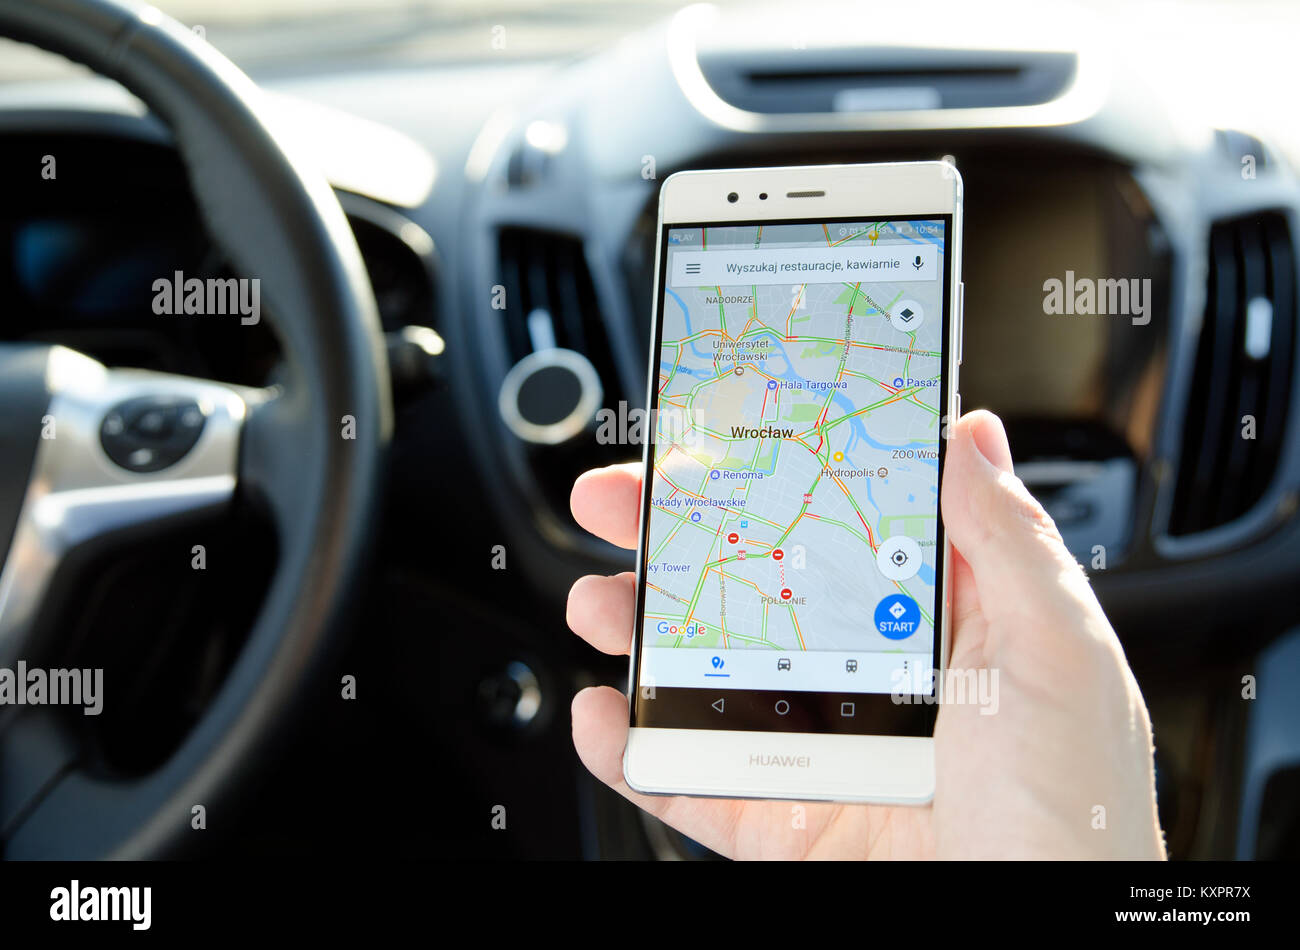 WROCLAW, Pologne - 13 déc 2017 : Google Maps est l'application mobile de navigation populaires en Pologne Banque D'Images